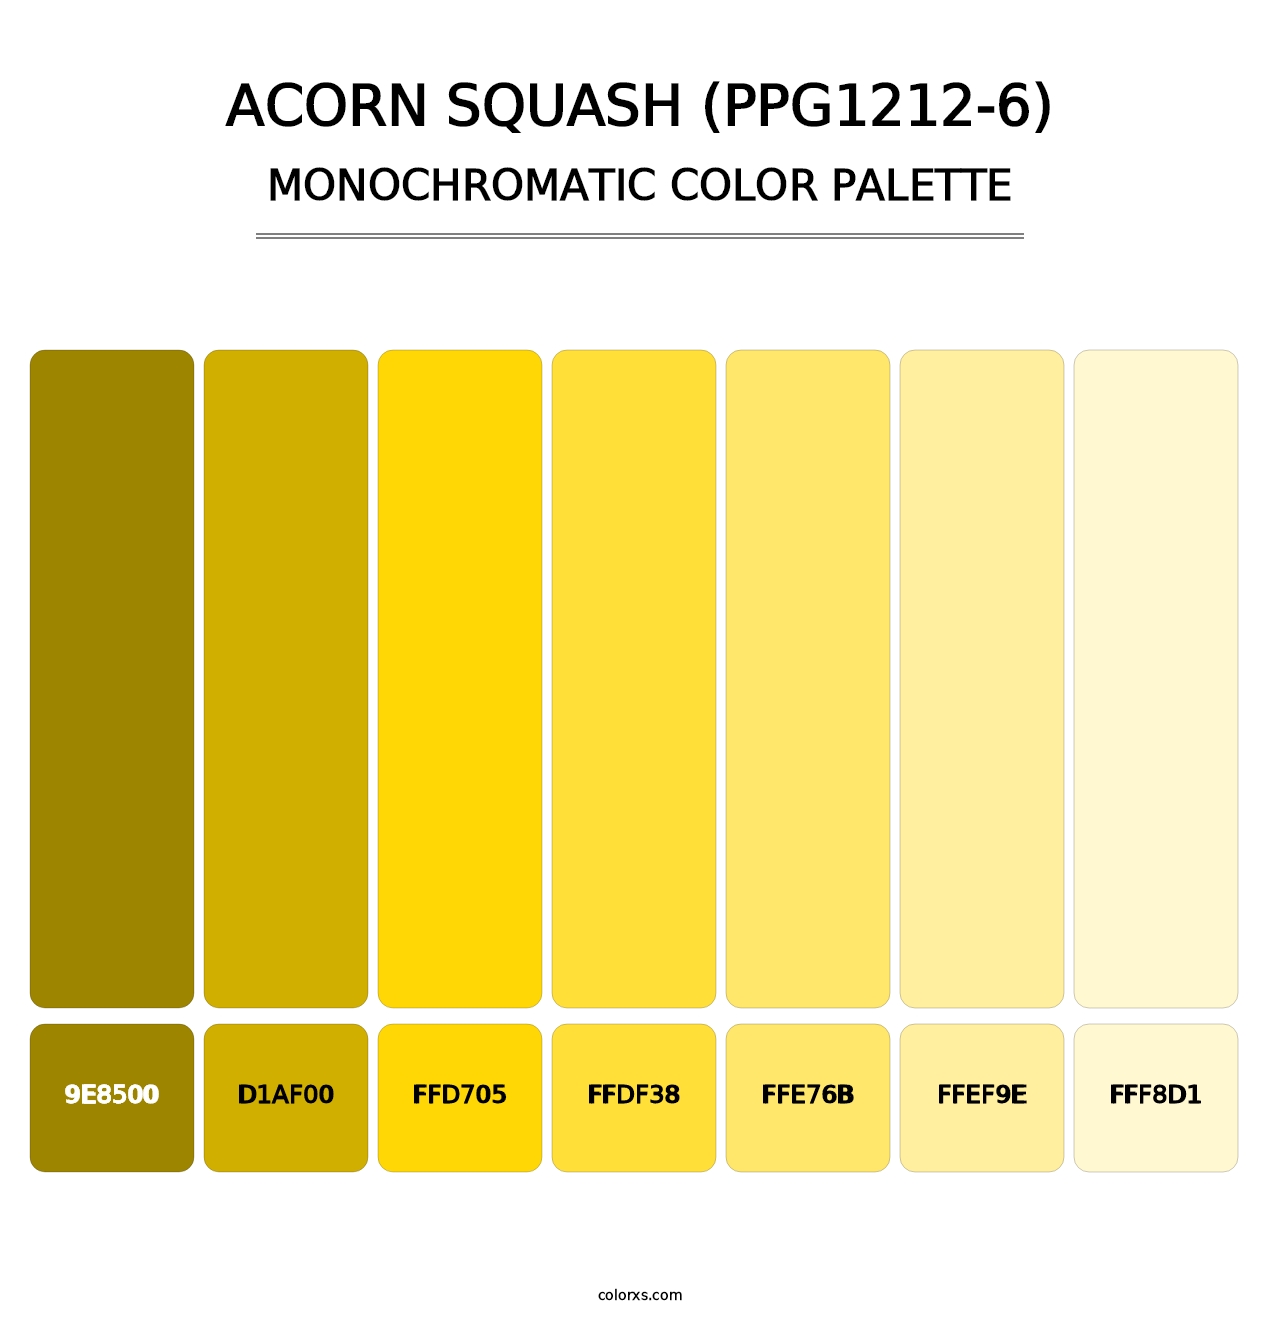 Acorn Squash (PPG1212-6) - Monochromatic Color Palette